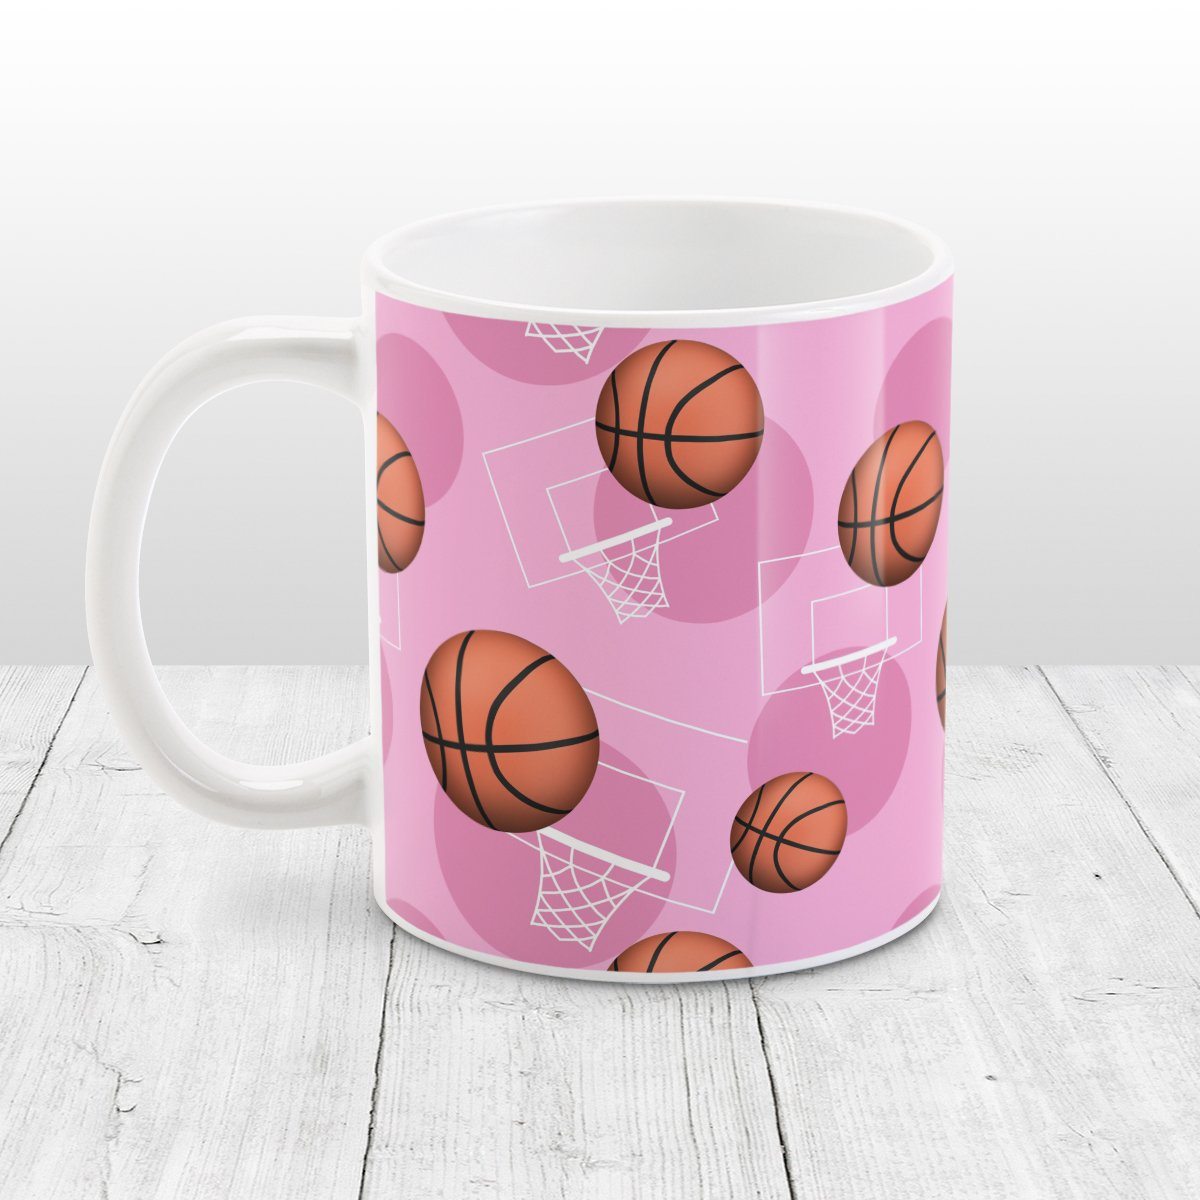 Basketball Themed Pattern Pink Mug at Amy's Coffee Mugs